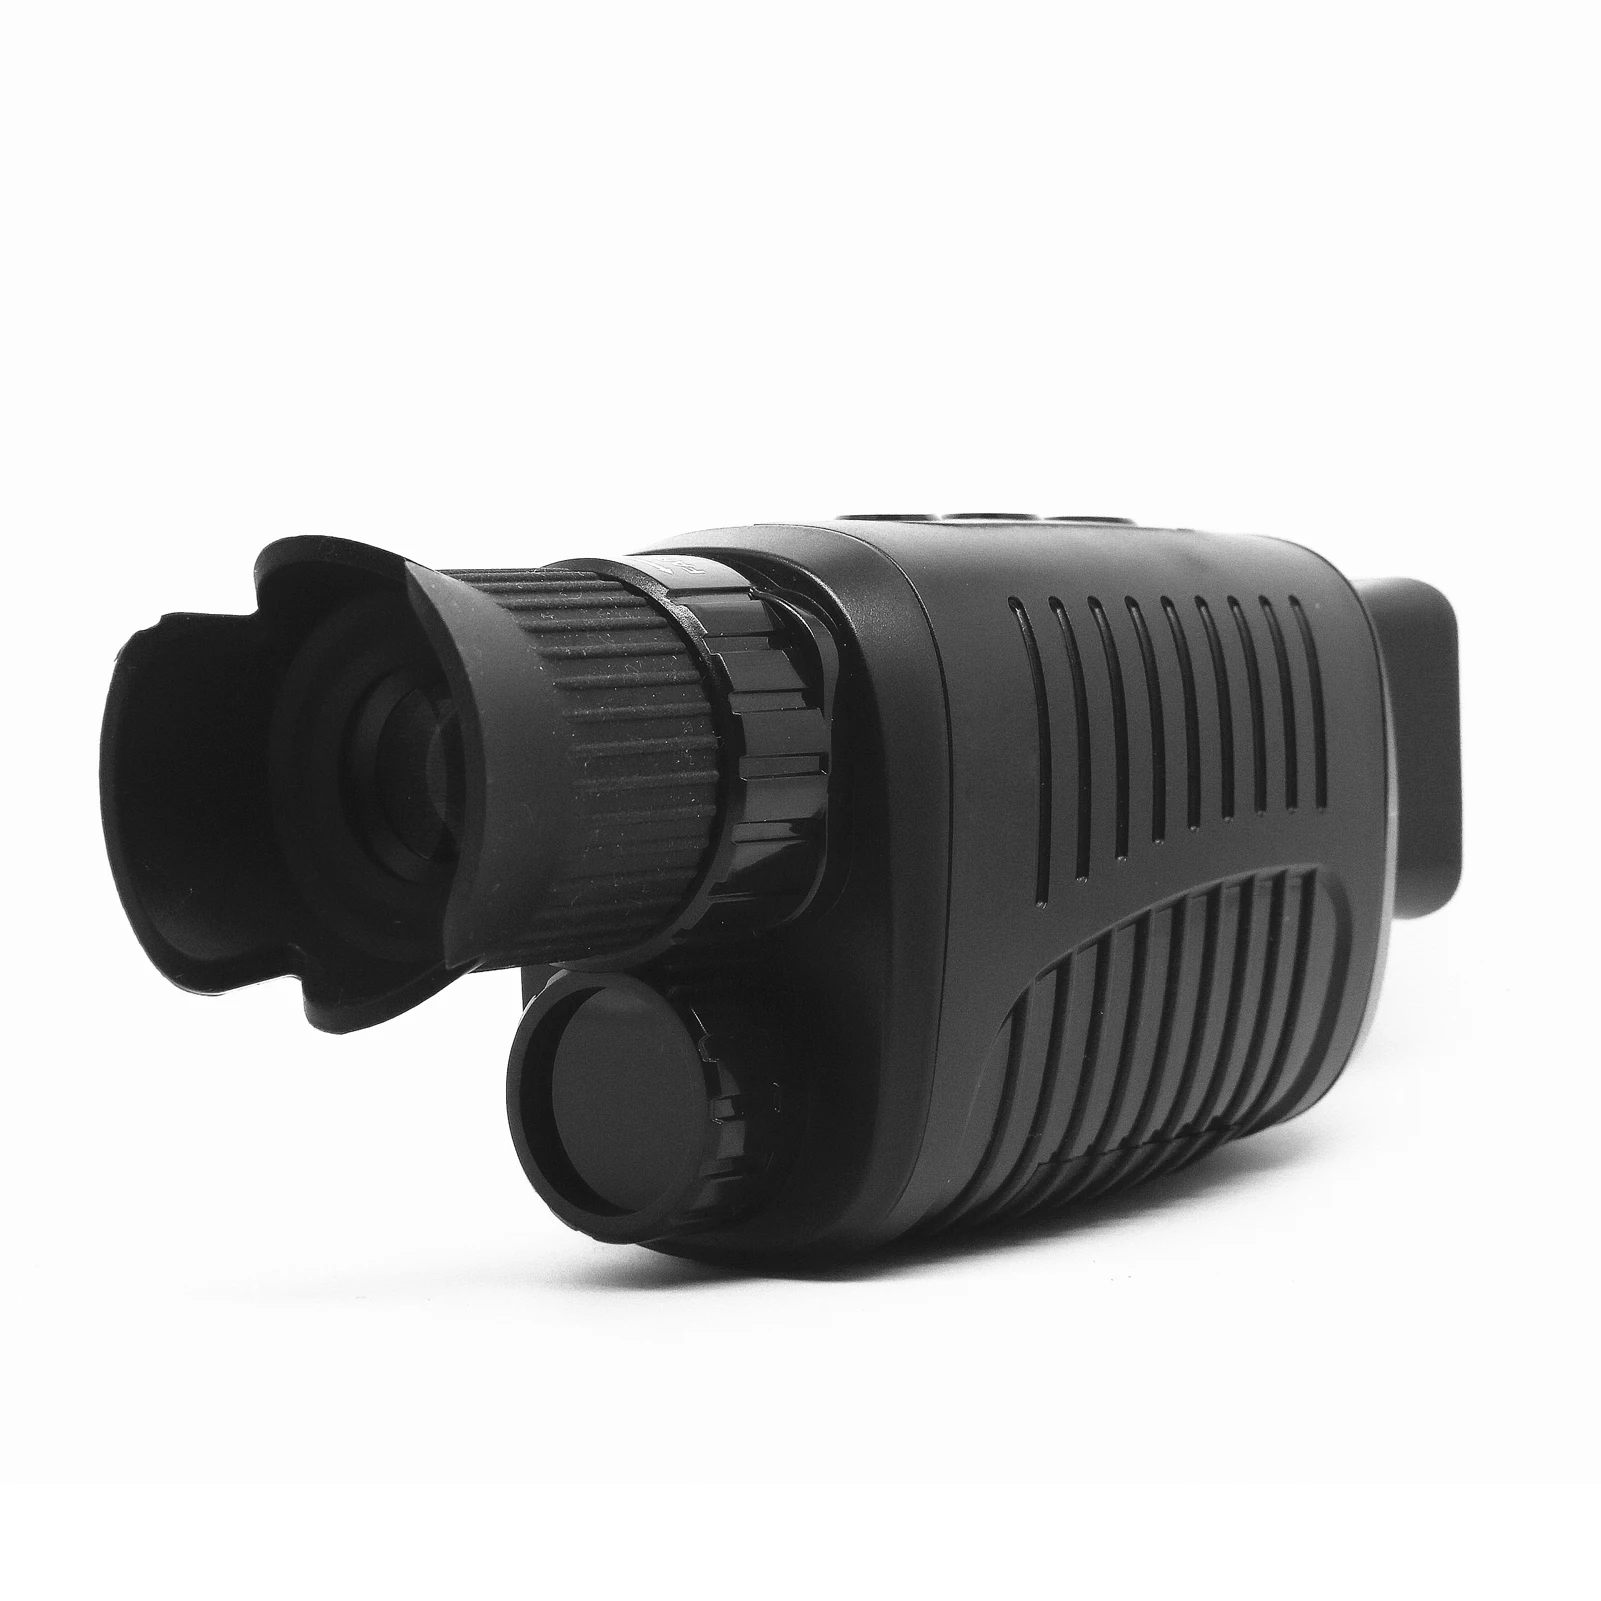 Цифровой Монокуляр T-eagle NV600 Pro с ИК-подсветкой и функцией ночного видения картой